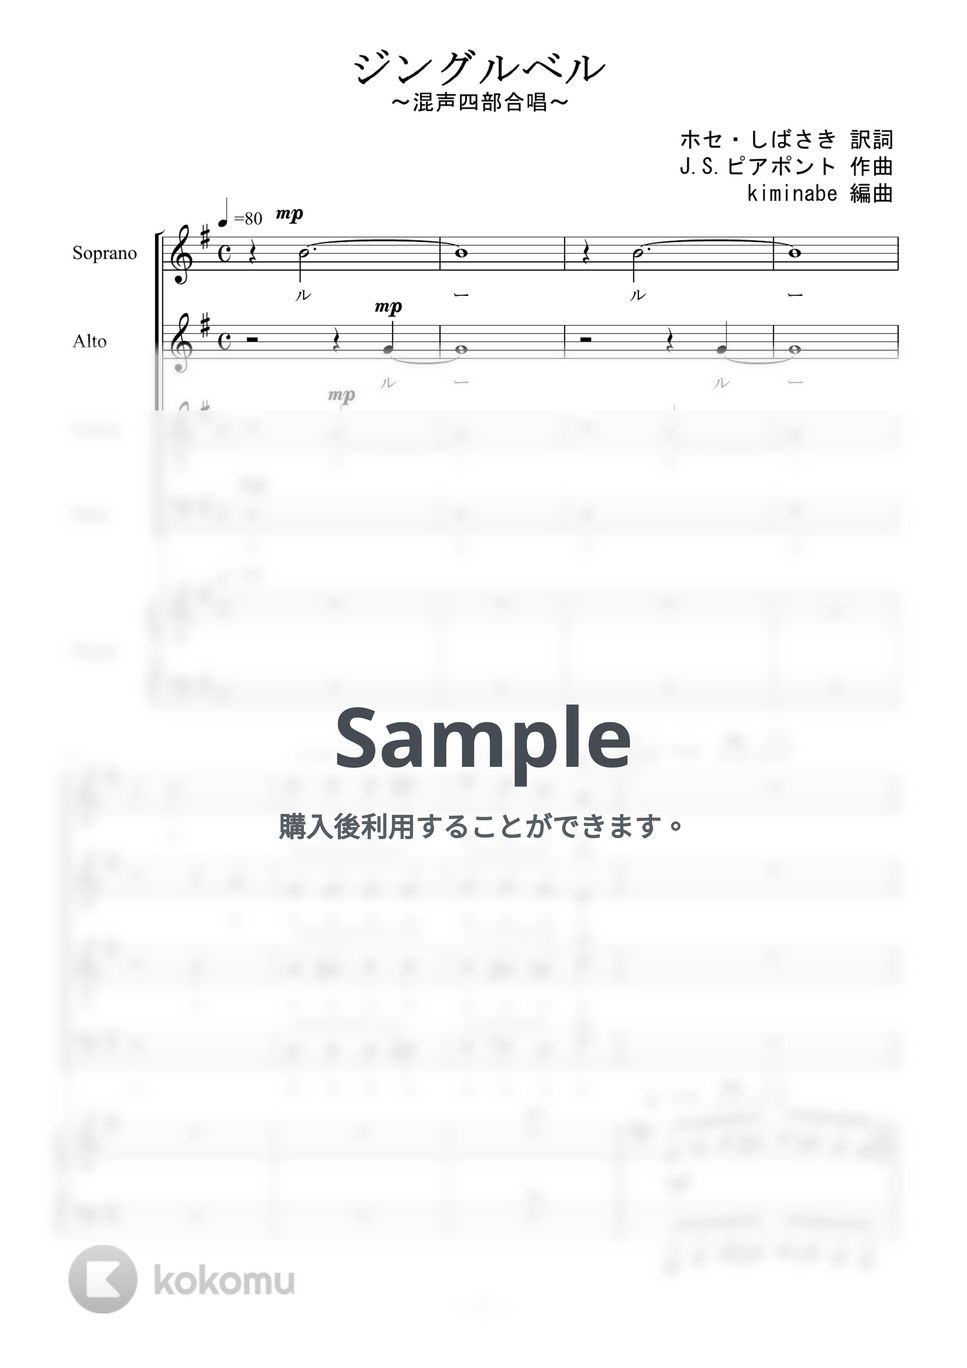 ジングルベル (混声四部合唱) by kiminabe